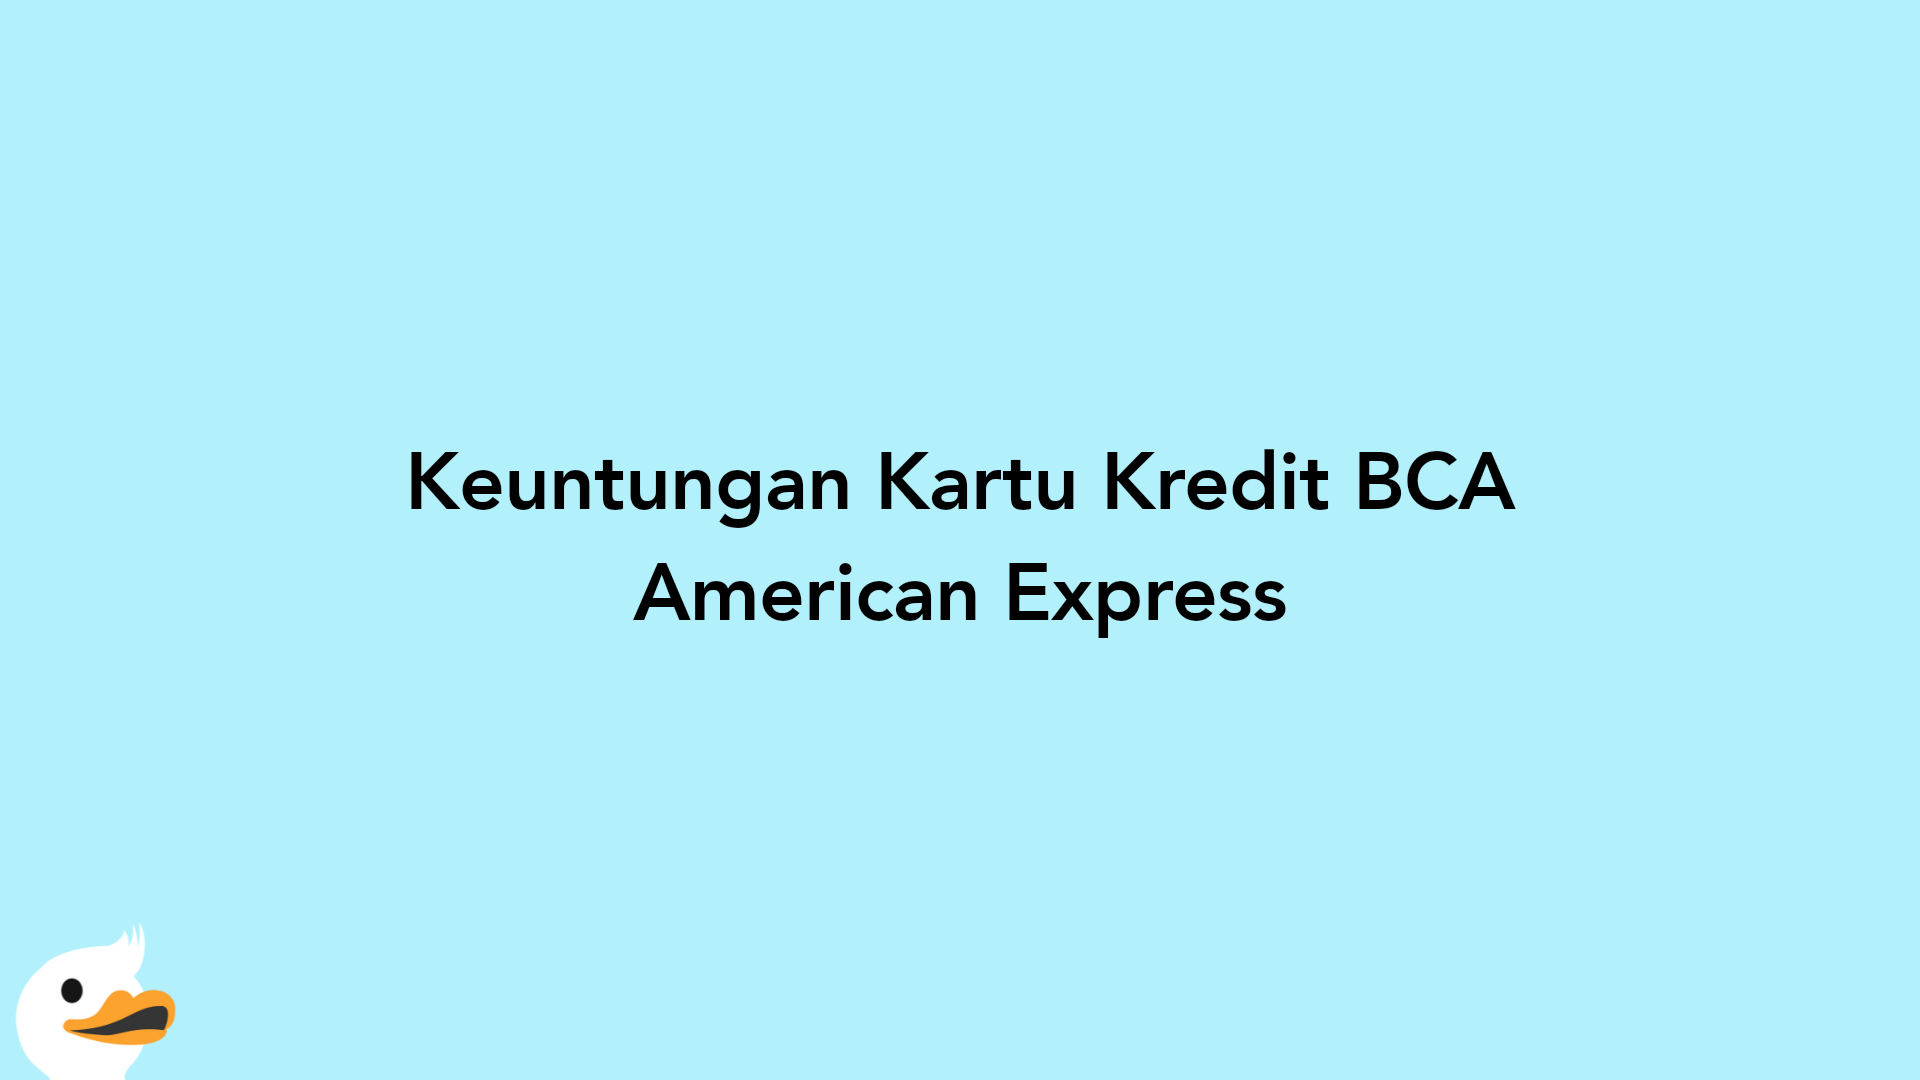 Keuntungan Kartu Kredit BCA American Express